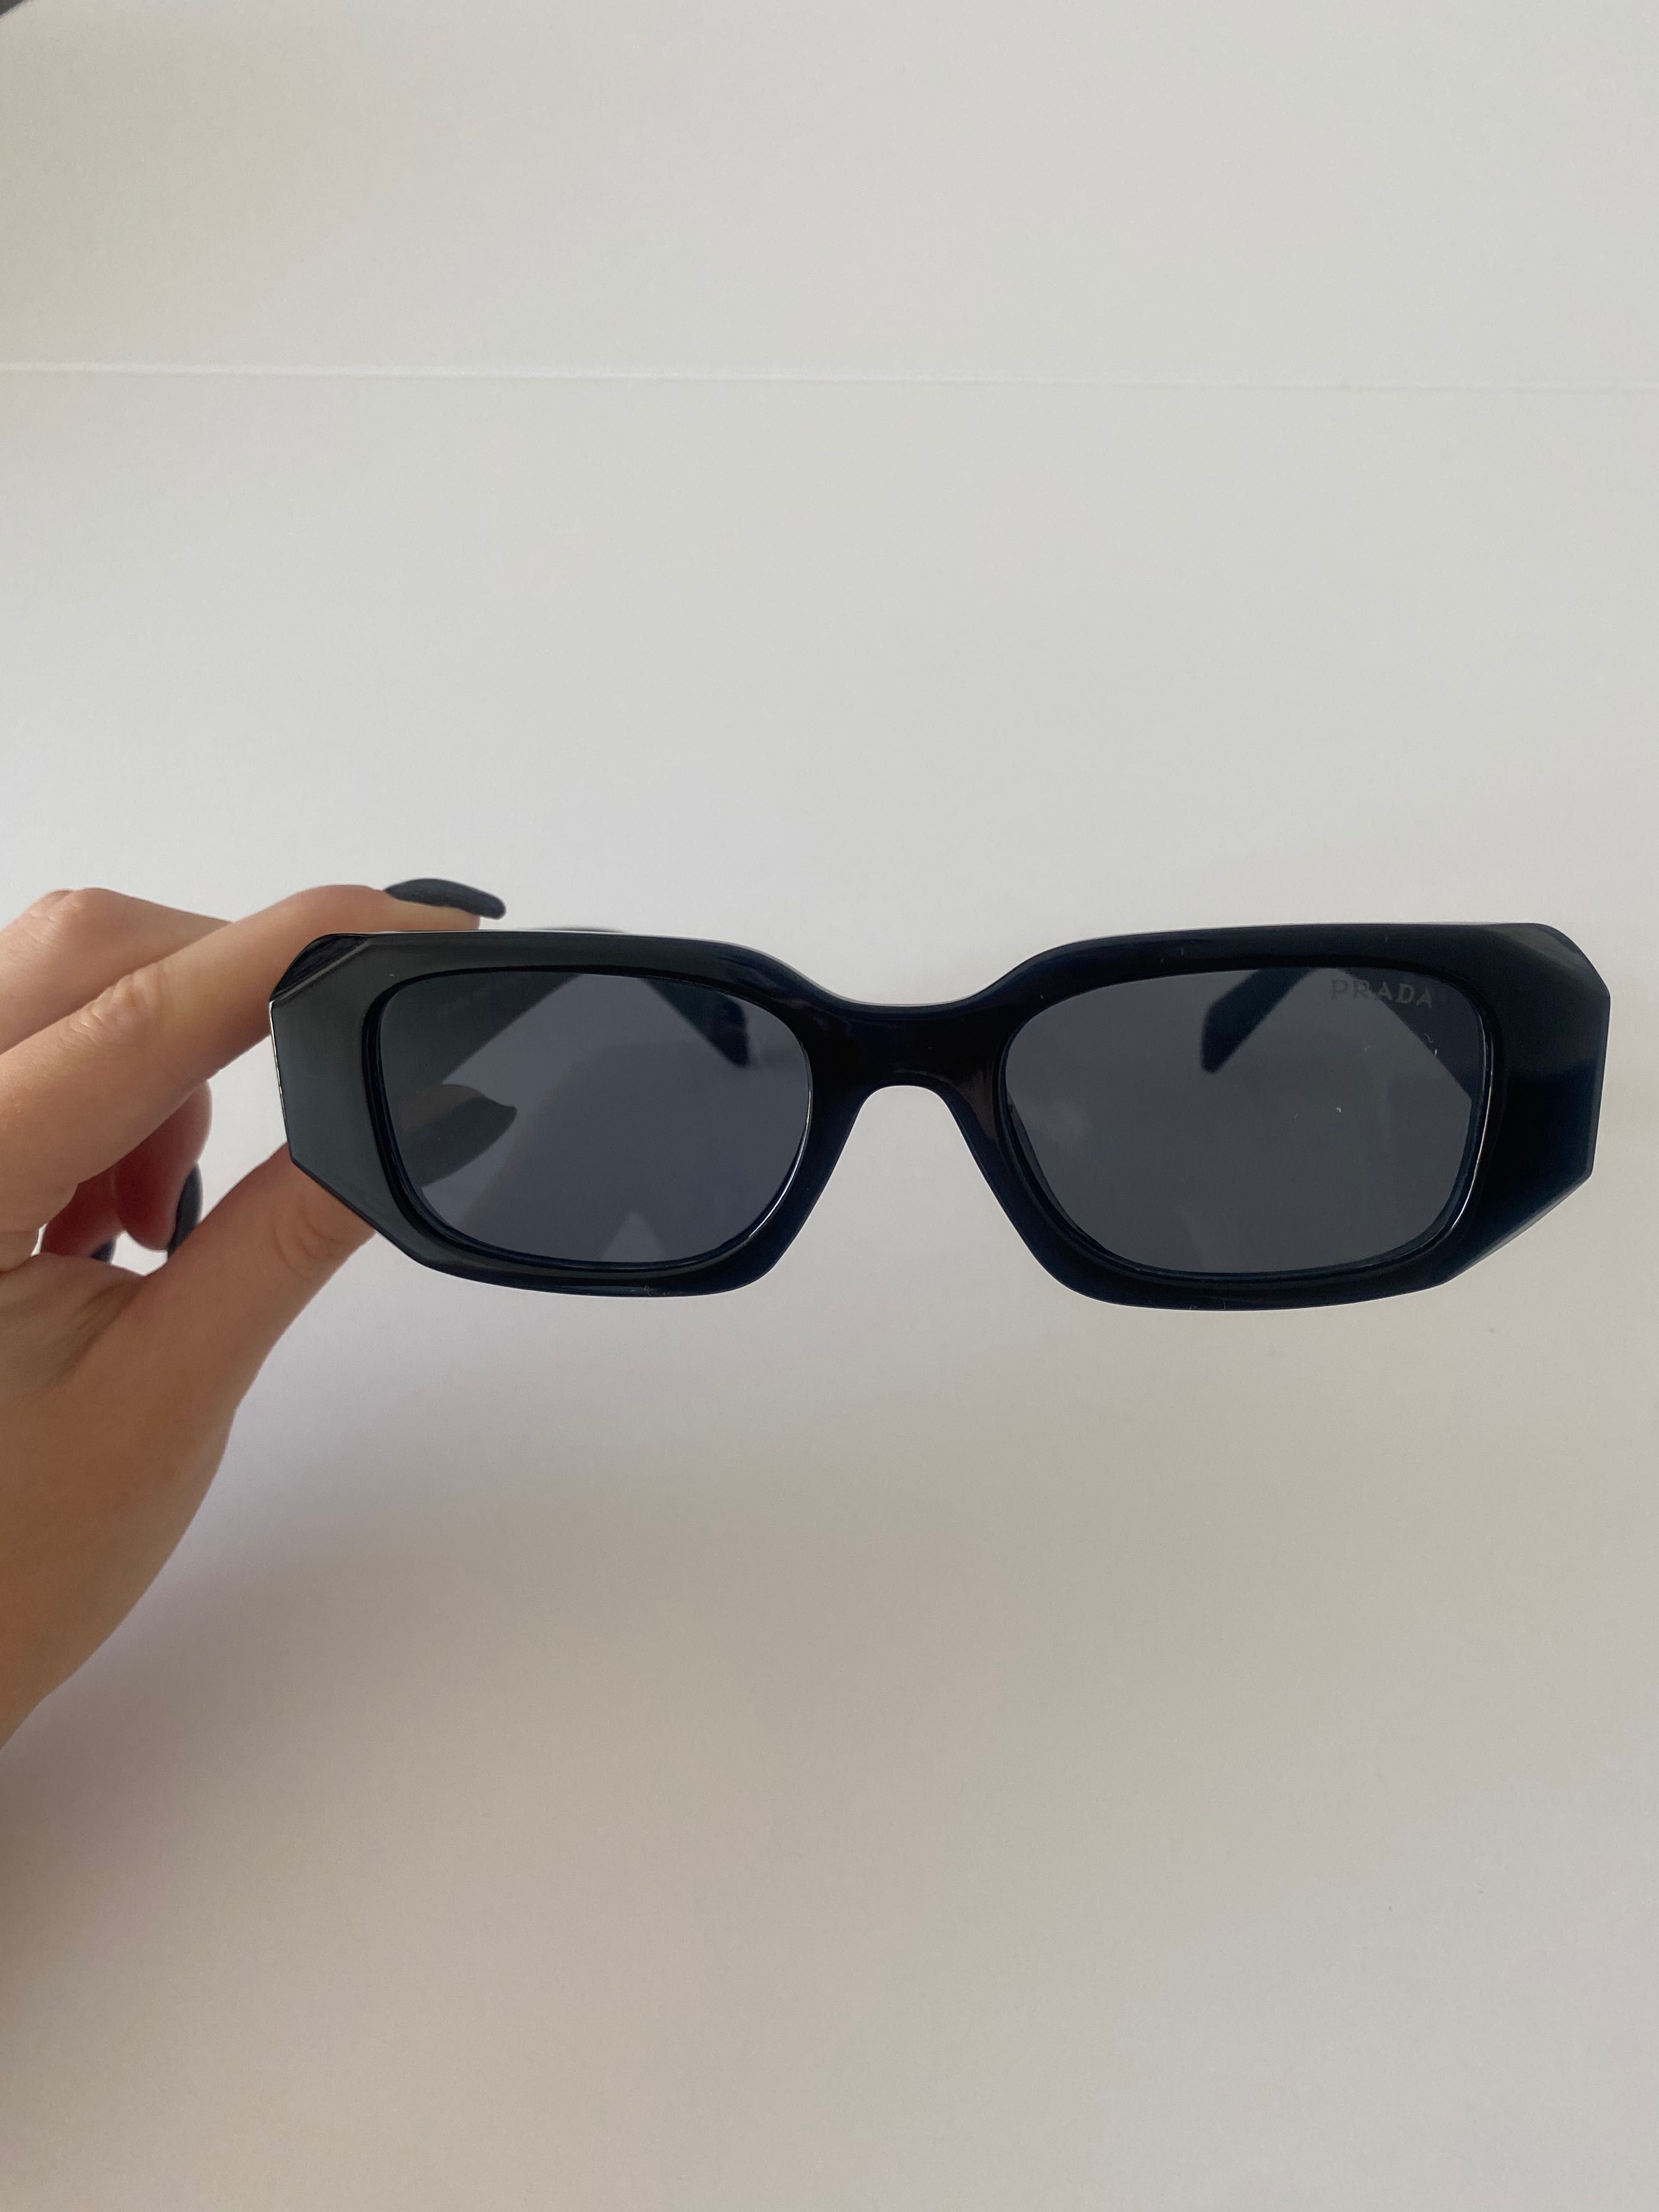 Okulary przeciwsłoneczne PRADA małe czarne eleganckie kwadratowe